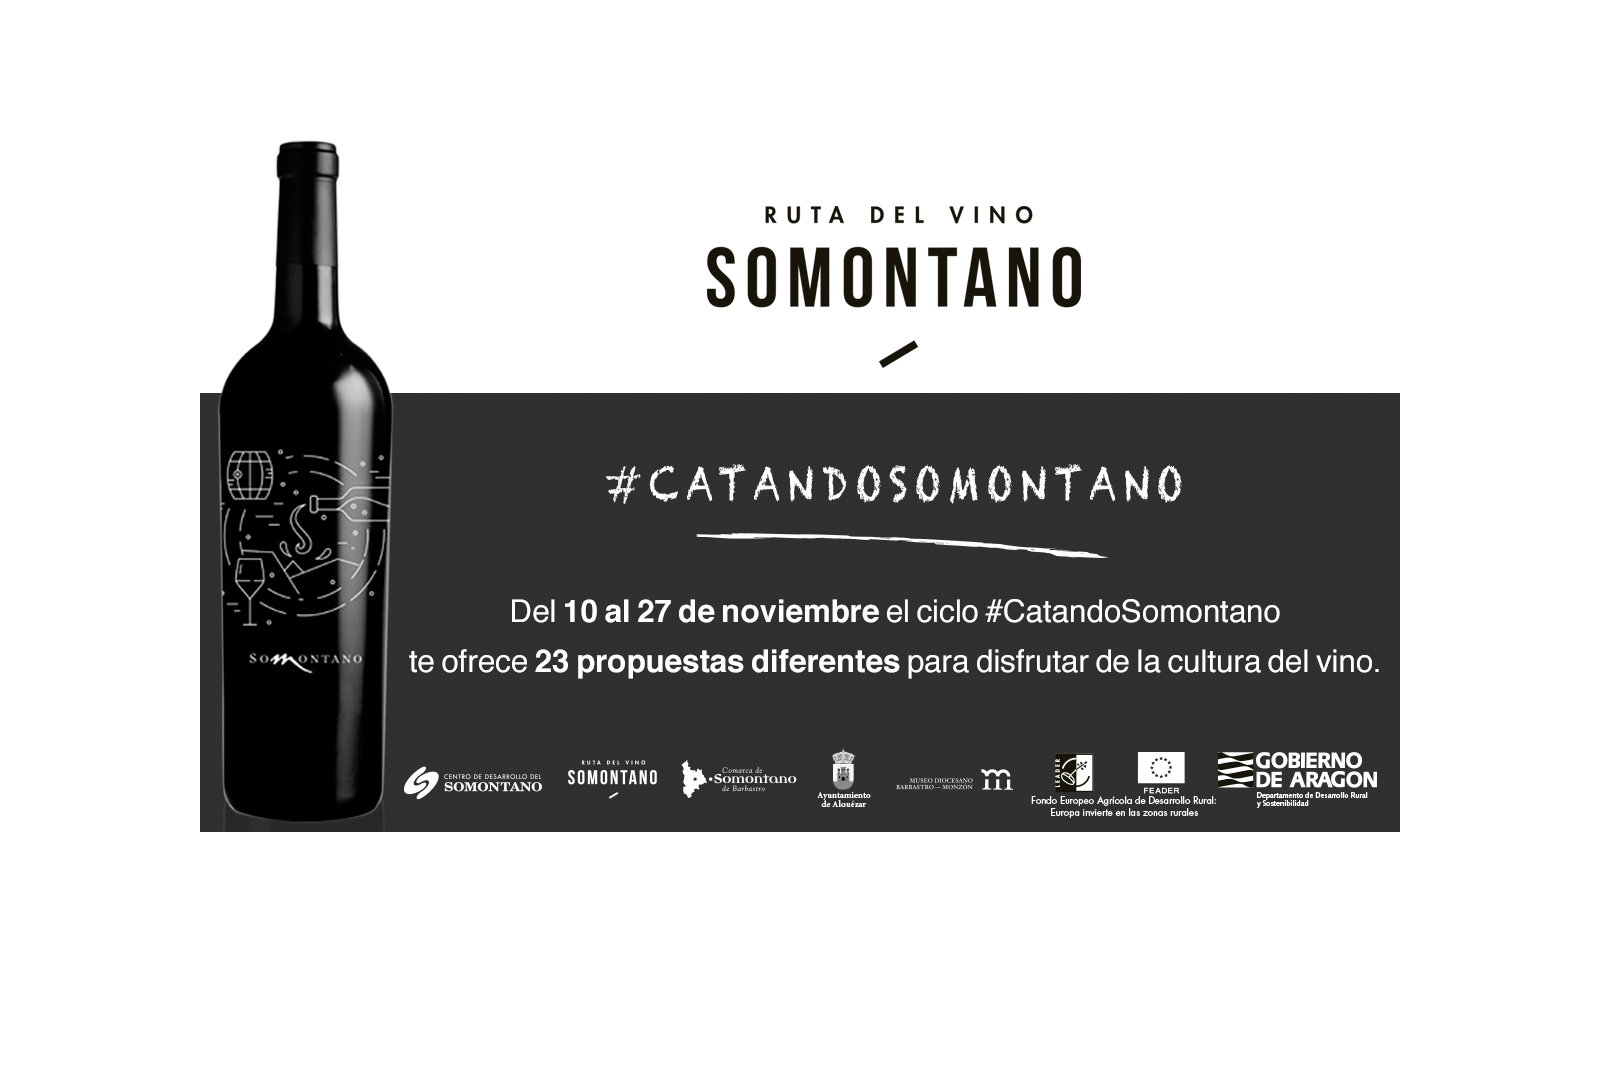 Vuelve #CatandoSomontano, una oportunidad para disfrutar de la Cultura del Vino - VINOS DIFERENTES